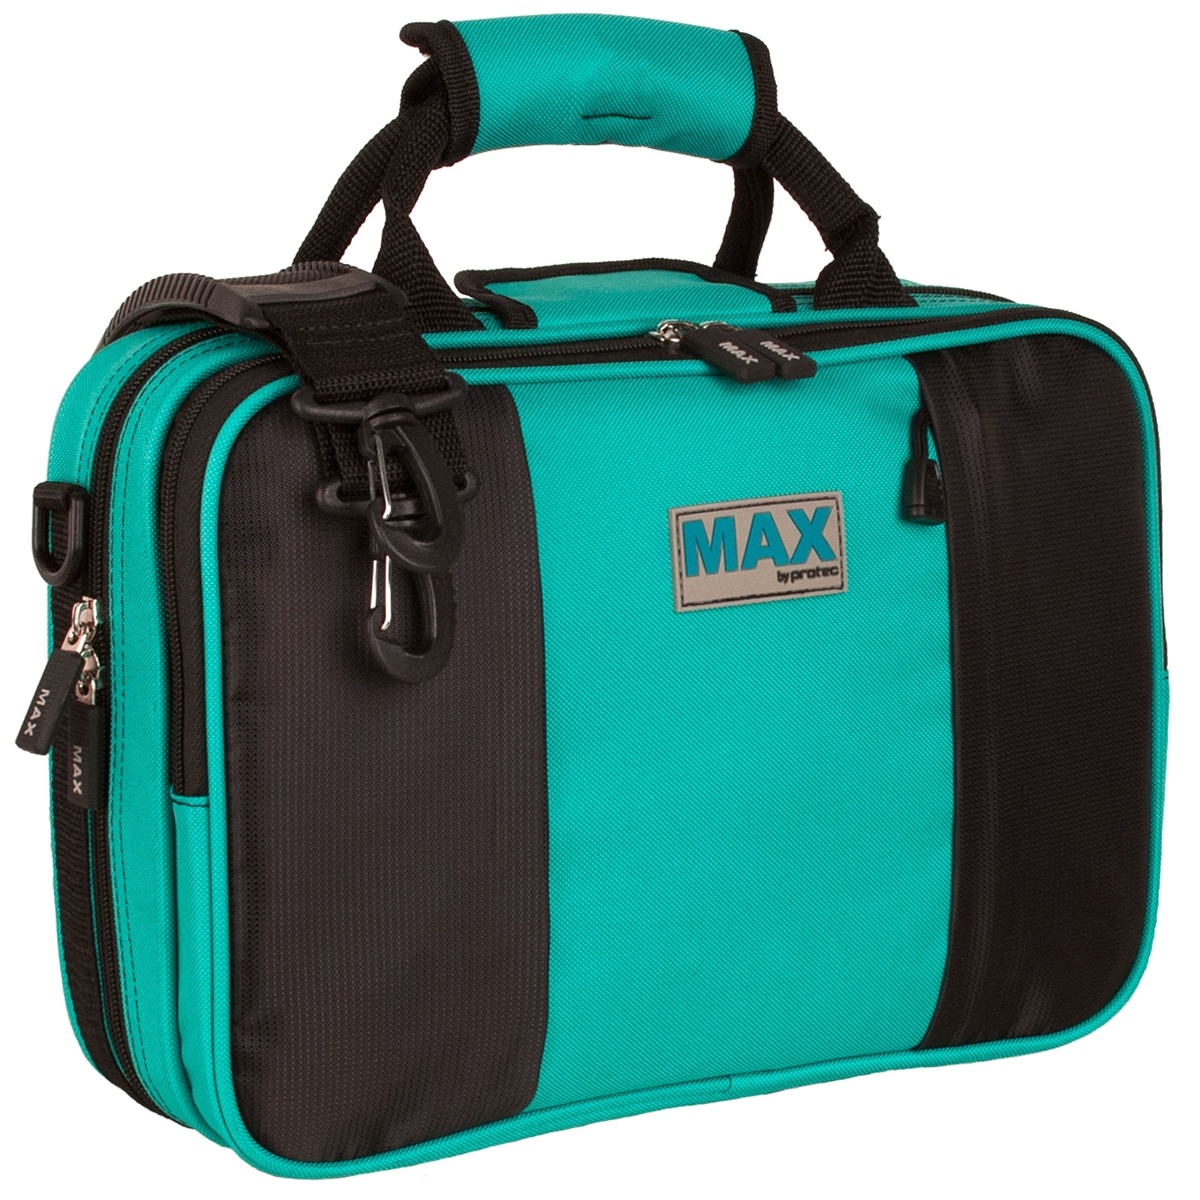 Protec Protec MX307 MAX Clarinet Case